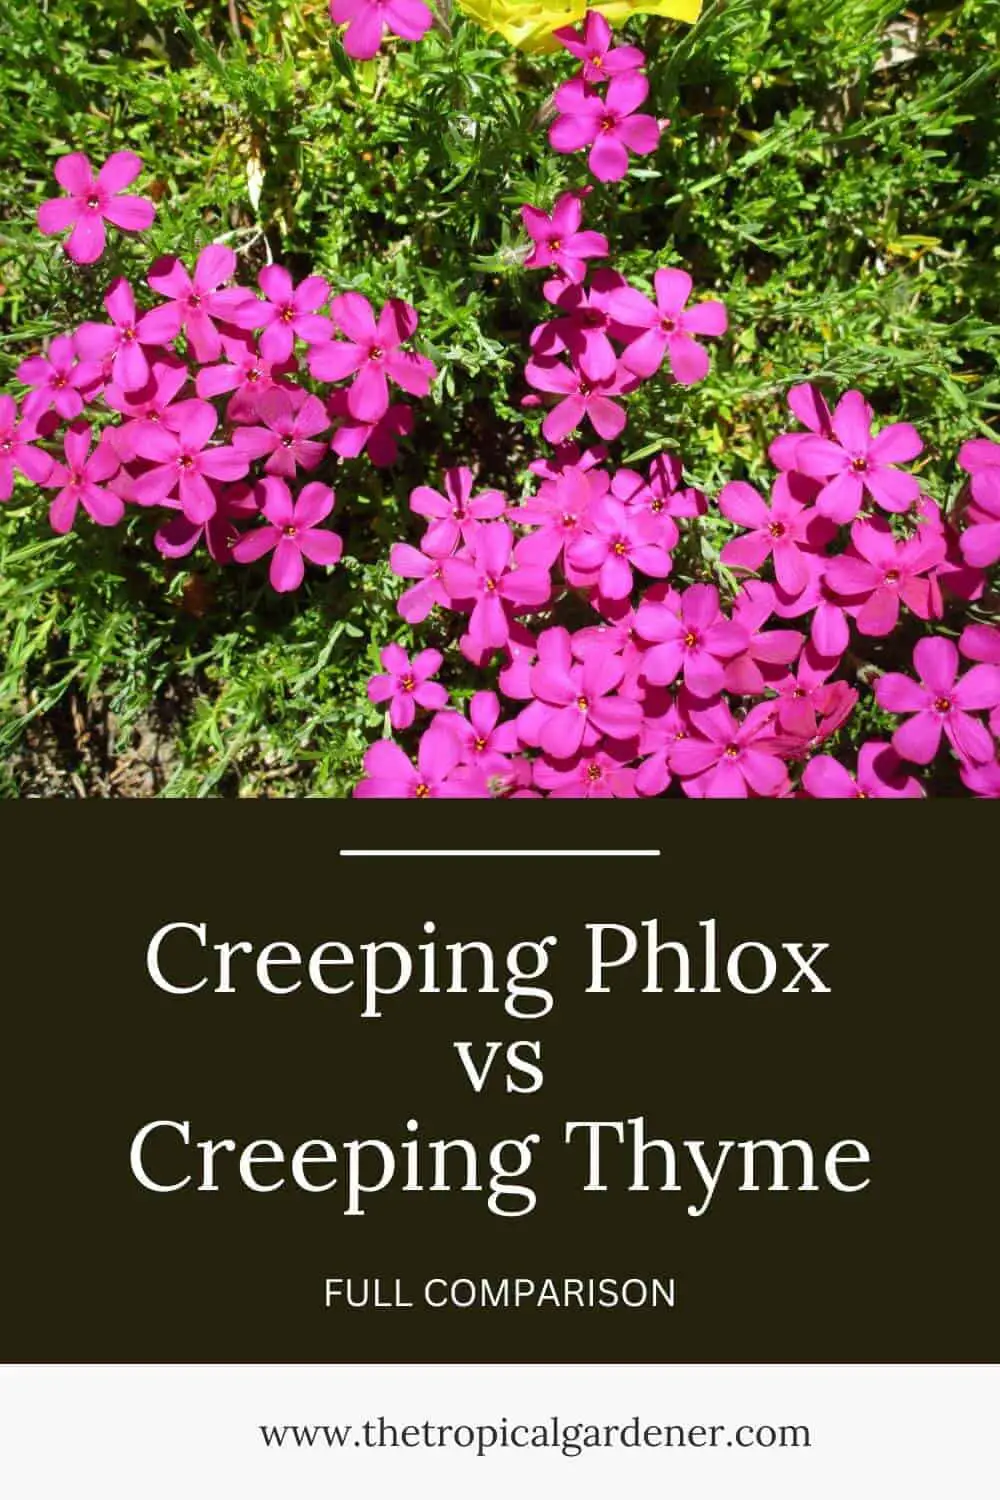 Creeping Phlox vs Creeping Thyme